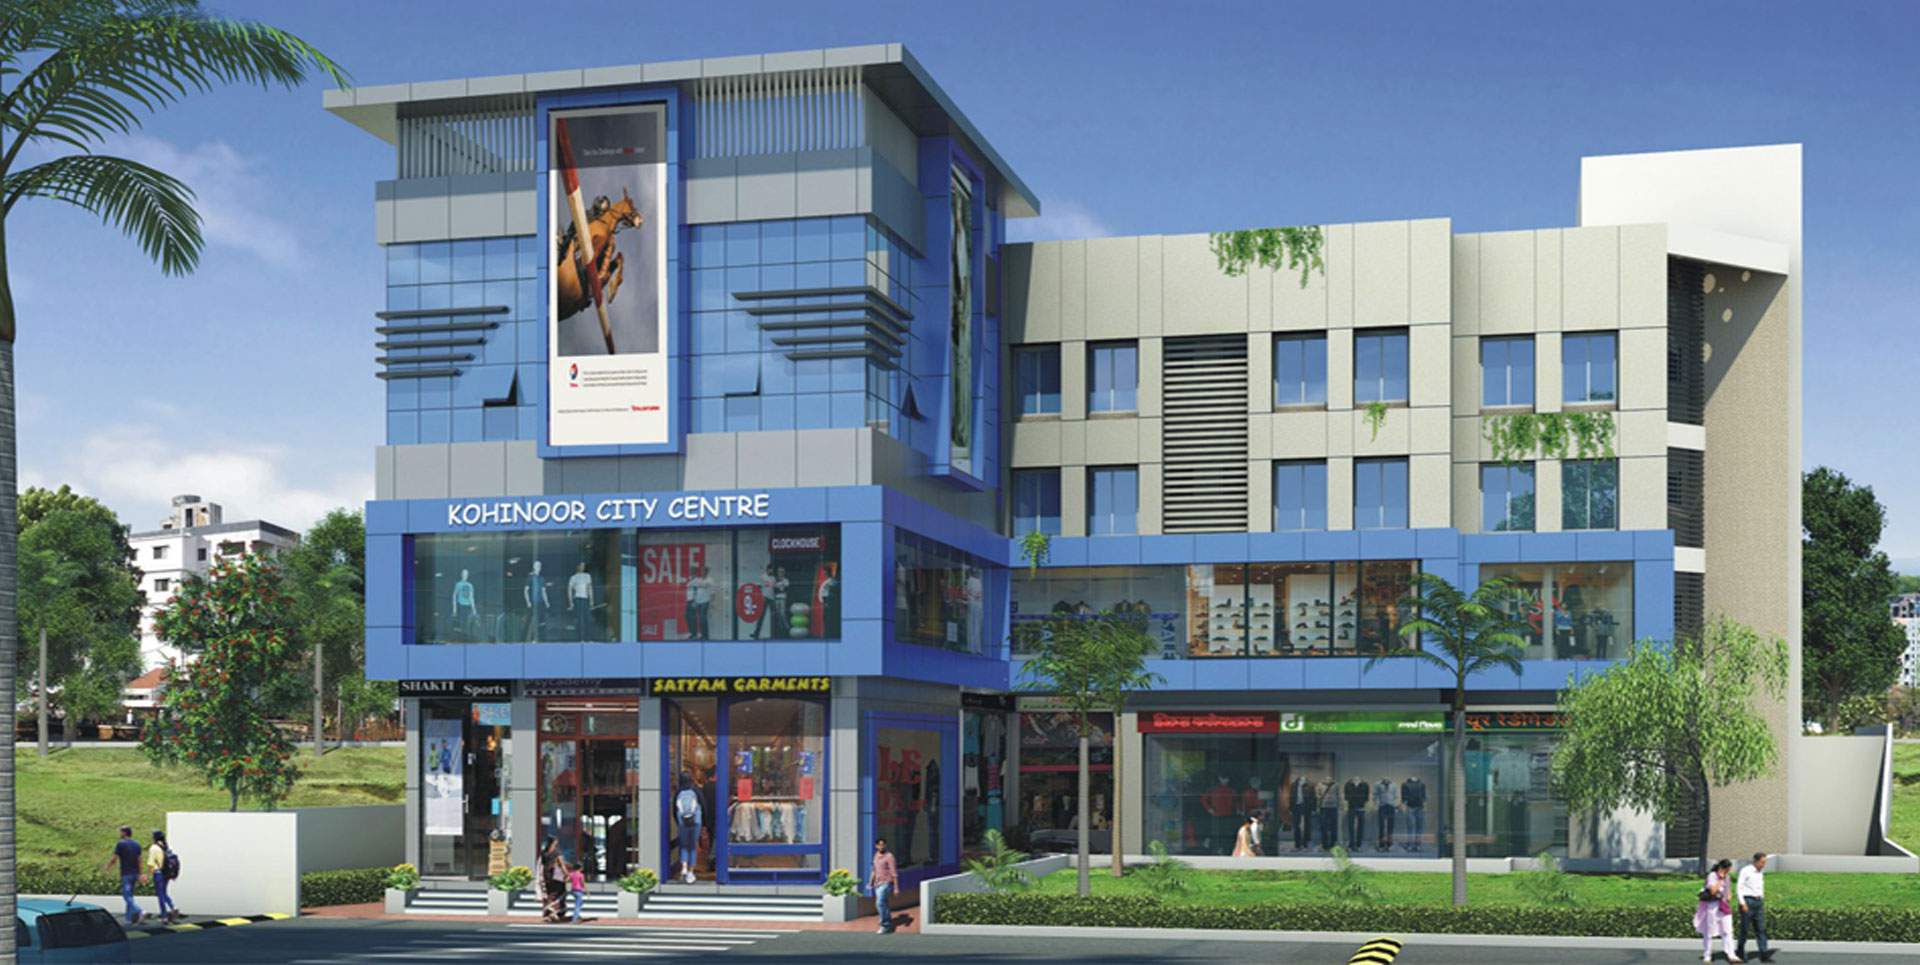 Kohinoor City Centre